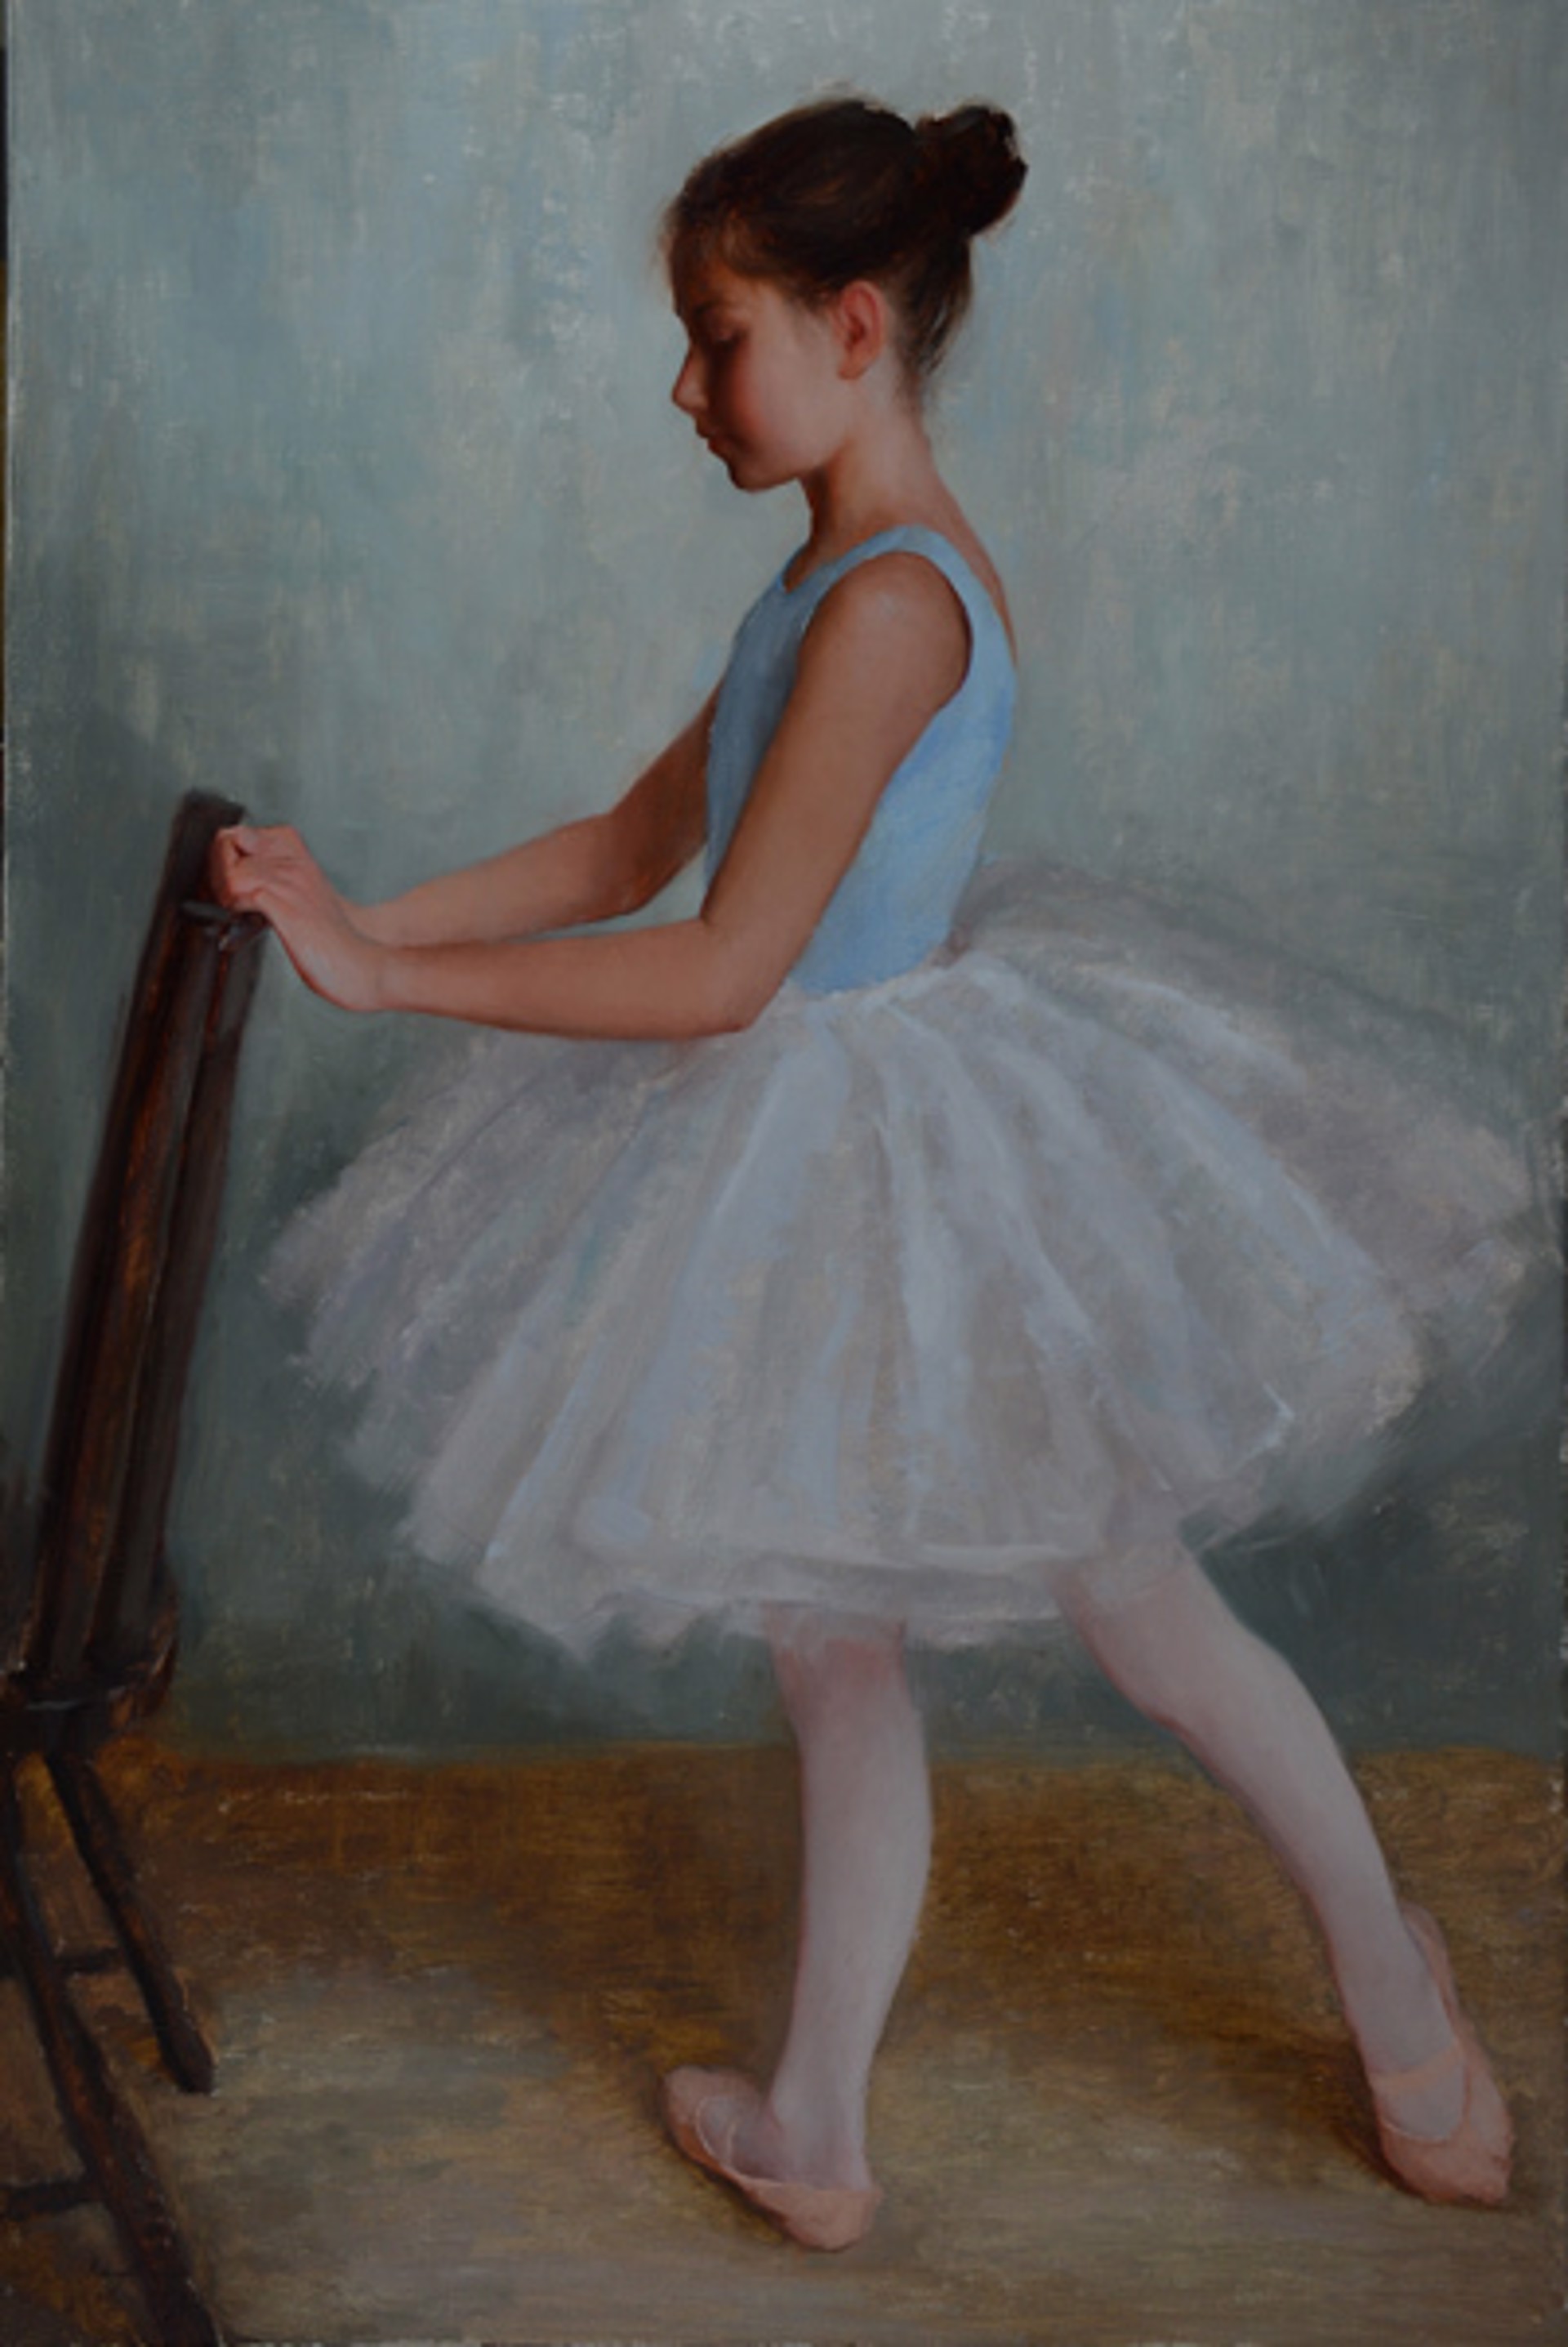 Young Ballerina by Marci Oleszkiewicz